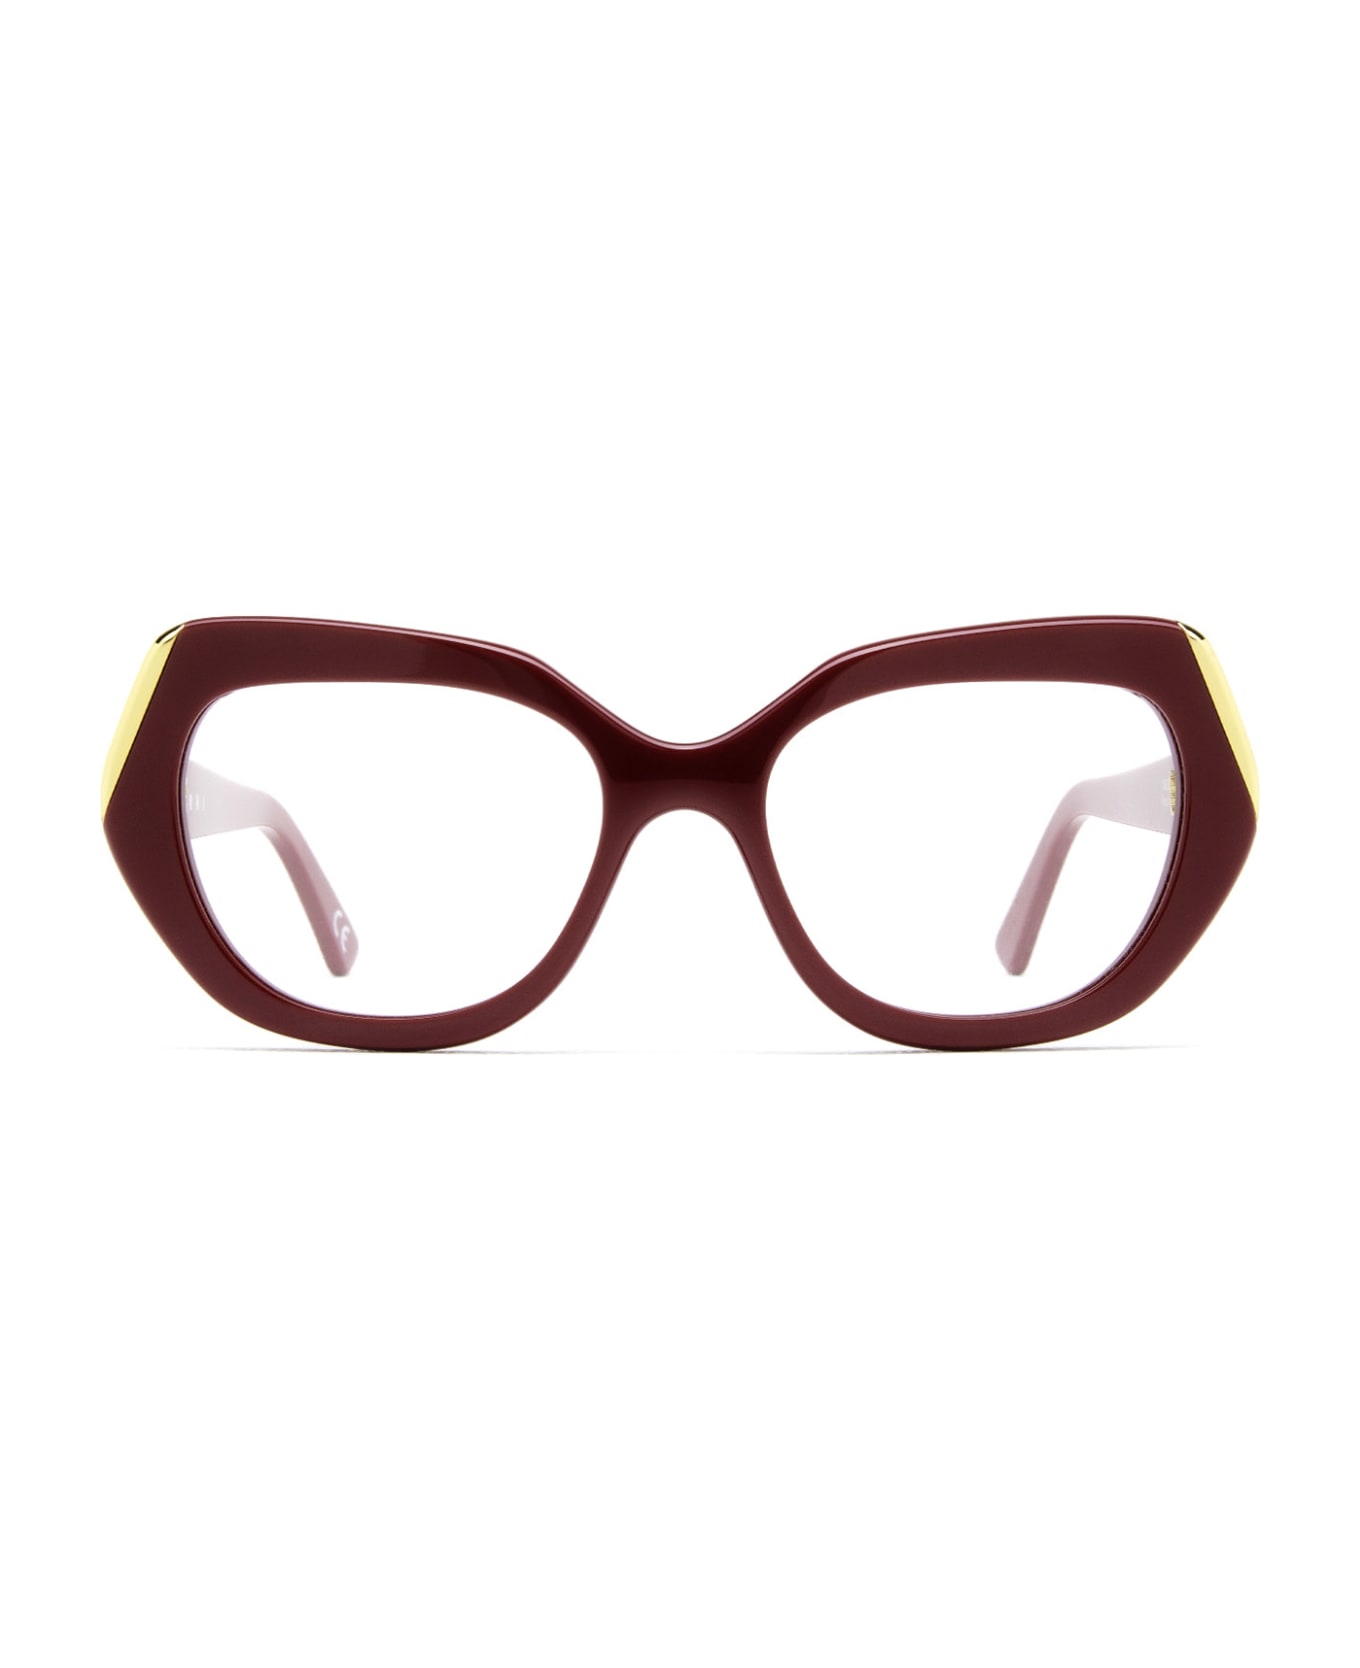 Marni Eyewear Antelope Canyon Bordeaux Glasses - Bordeaux アイウェア